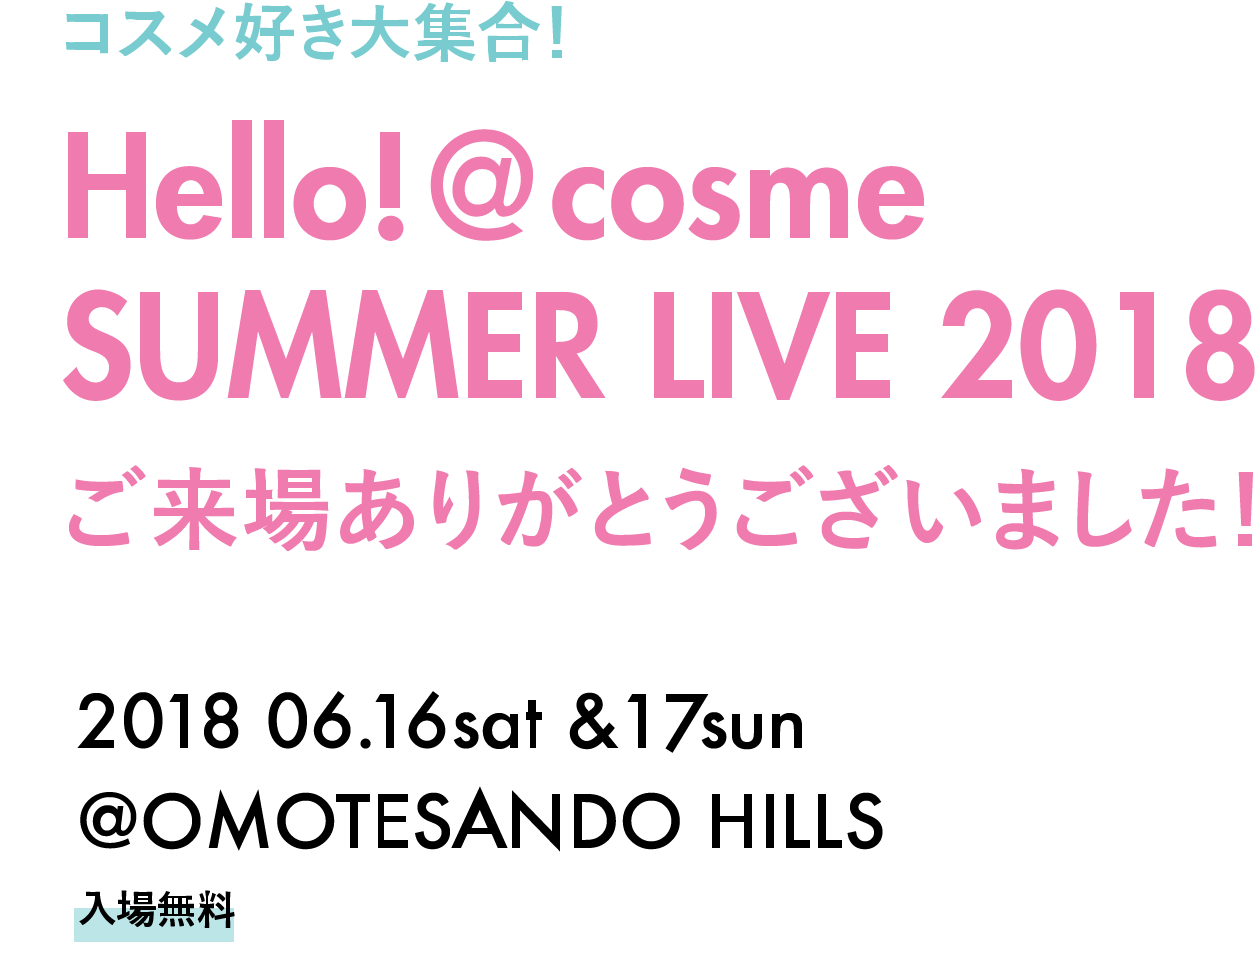 コスメ好き大集合！Hello! @cosme SUMMER LIVE 2018 開催決定! 抽選で２０００名をご招待 2018 06.16sat - 17sun @OMOTESANDO HILLS 入場無料